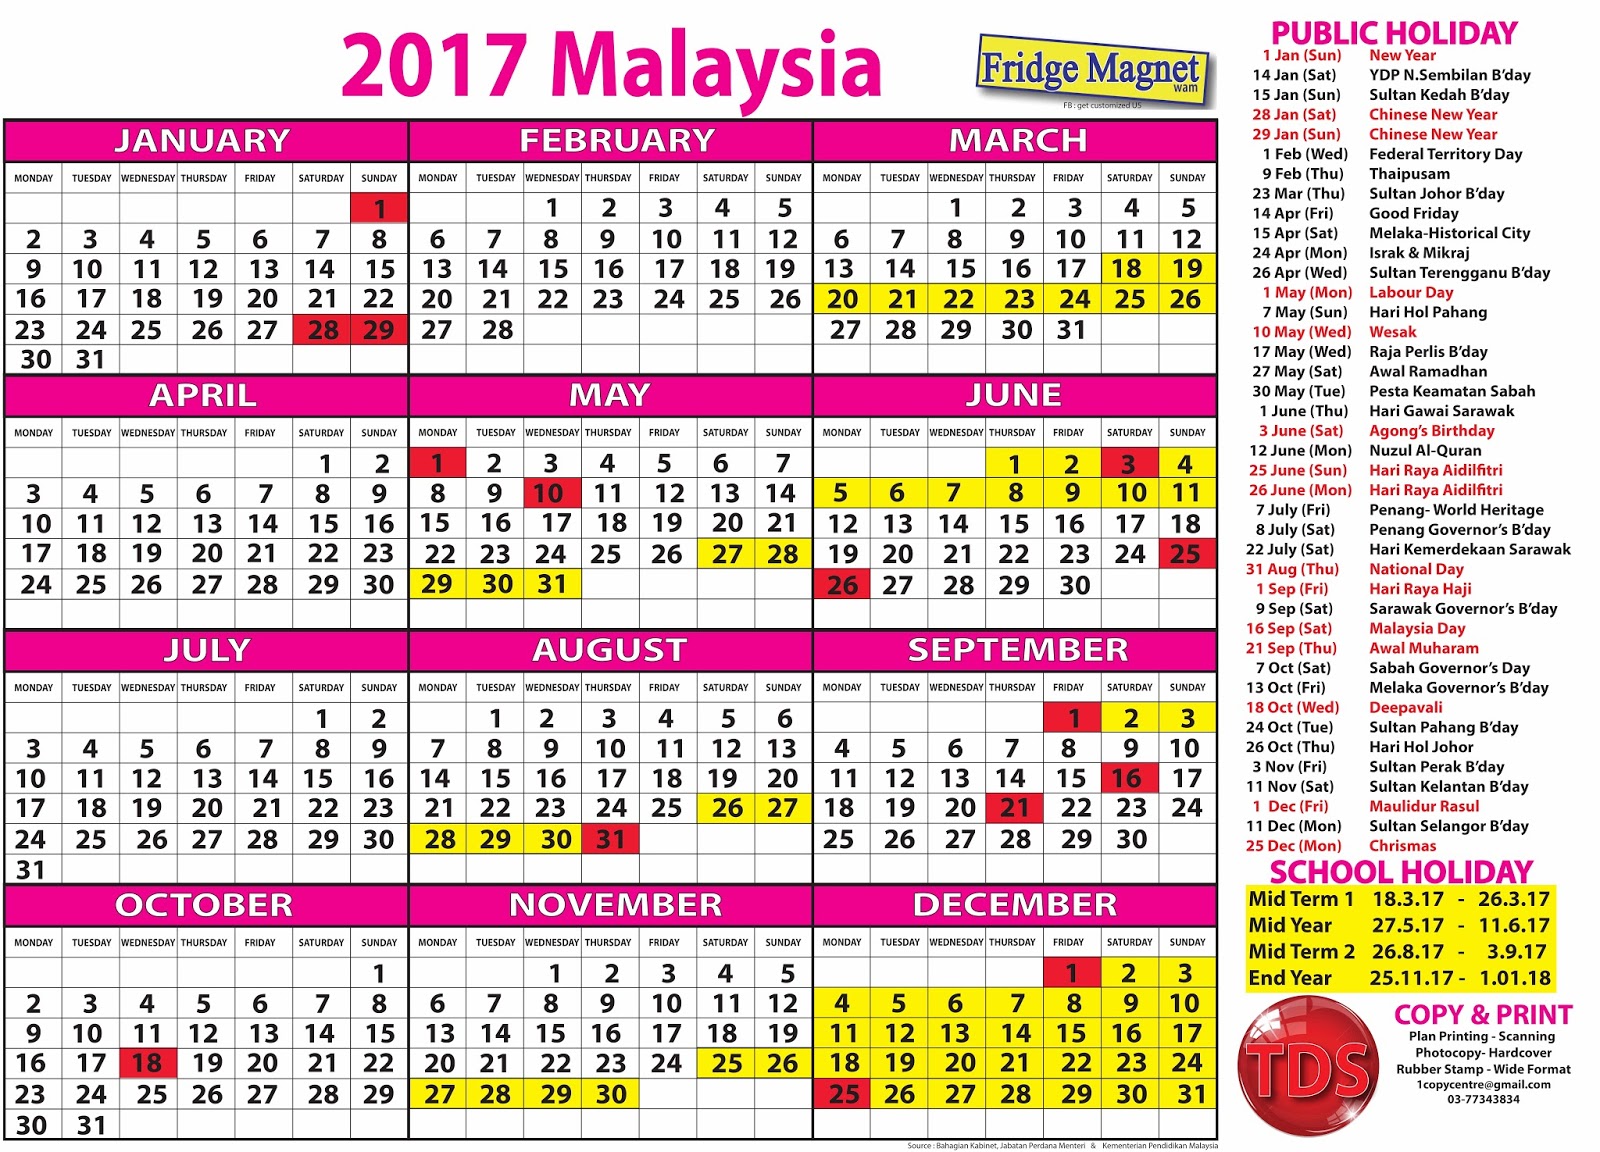 FREE CALENDAR 2017 (MALAYSIA) - KALENDAR PERCUMA 2017 